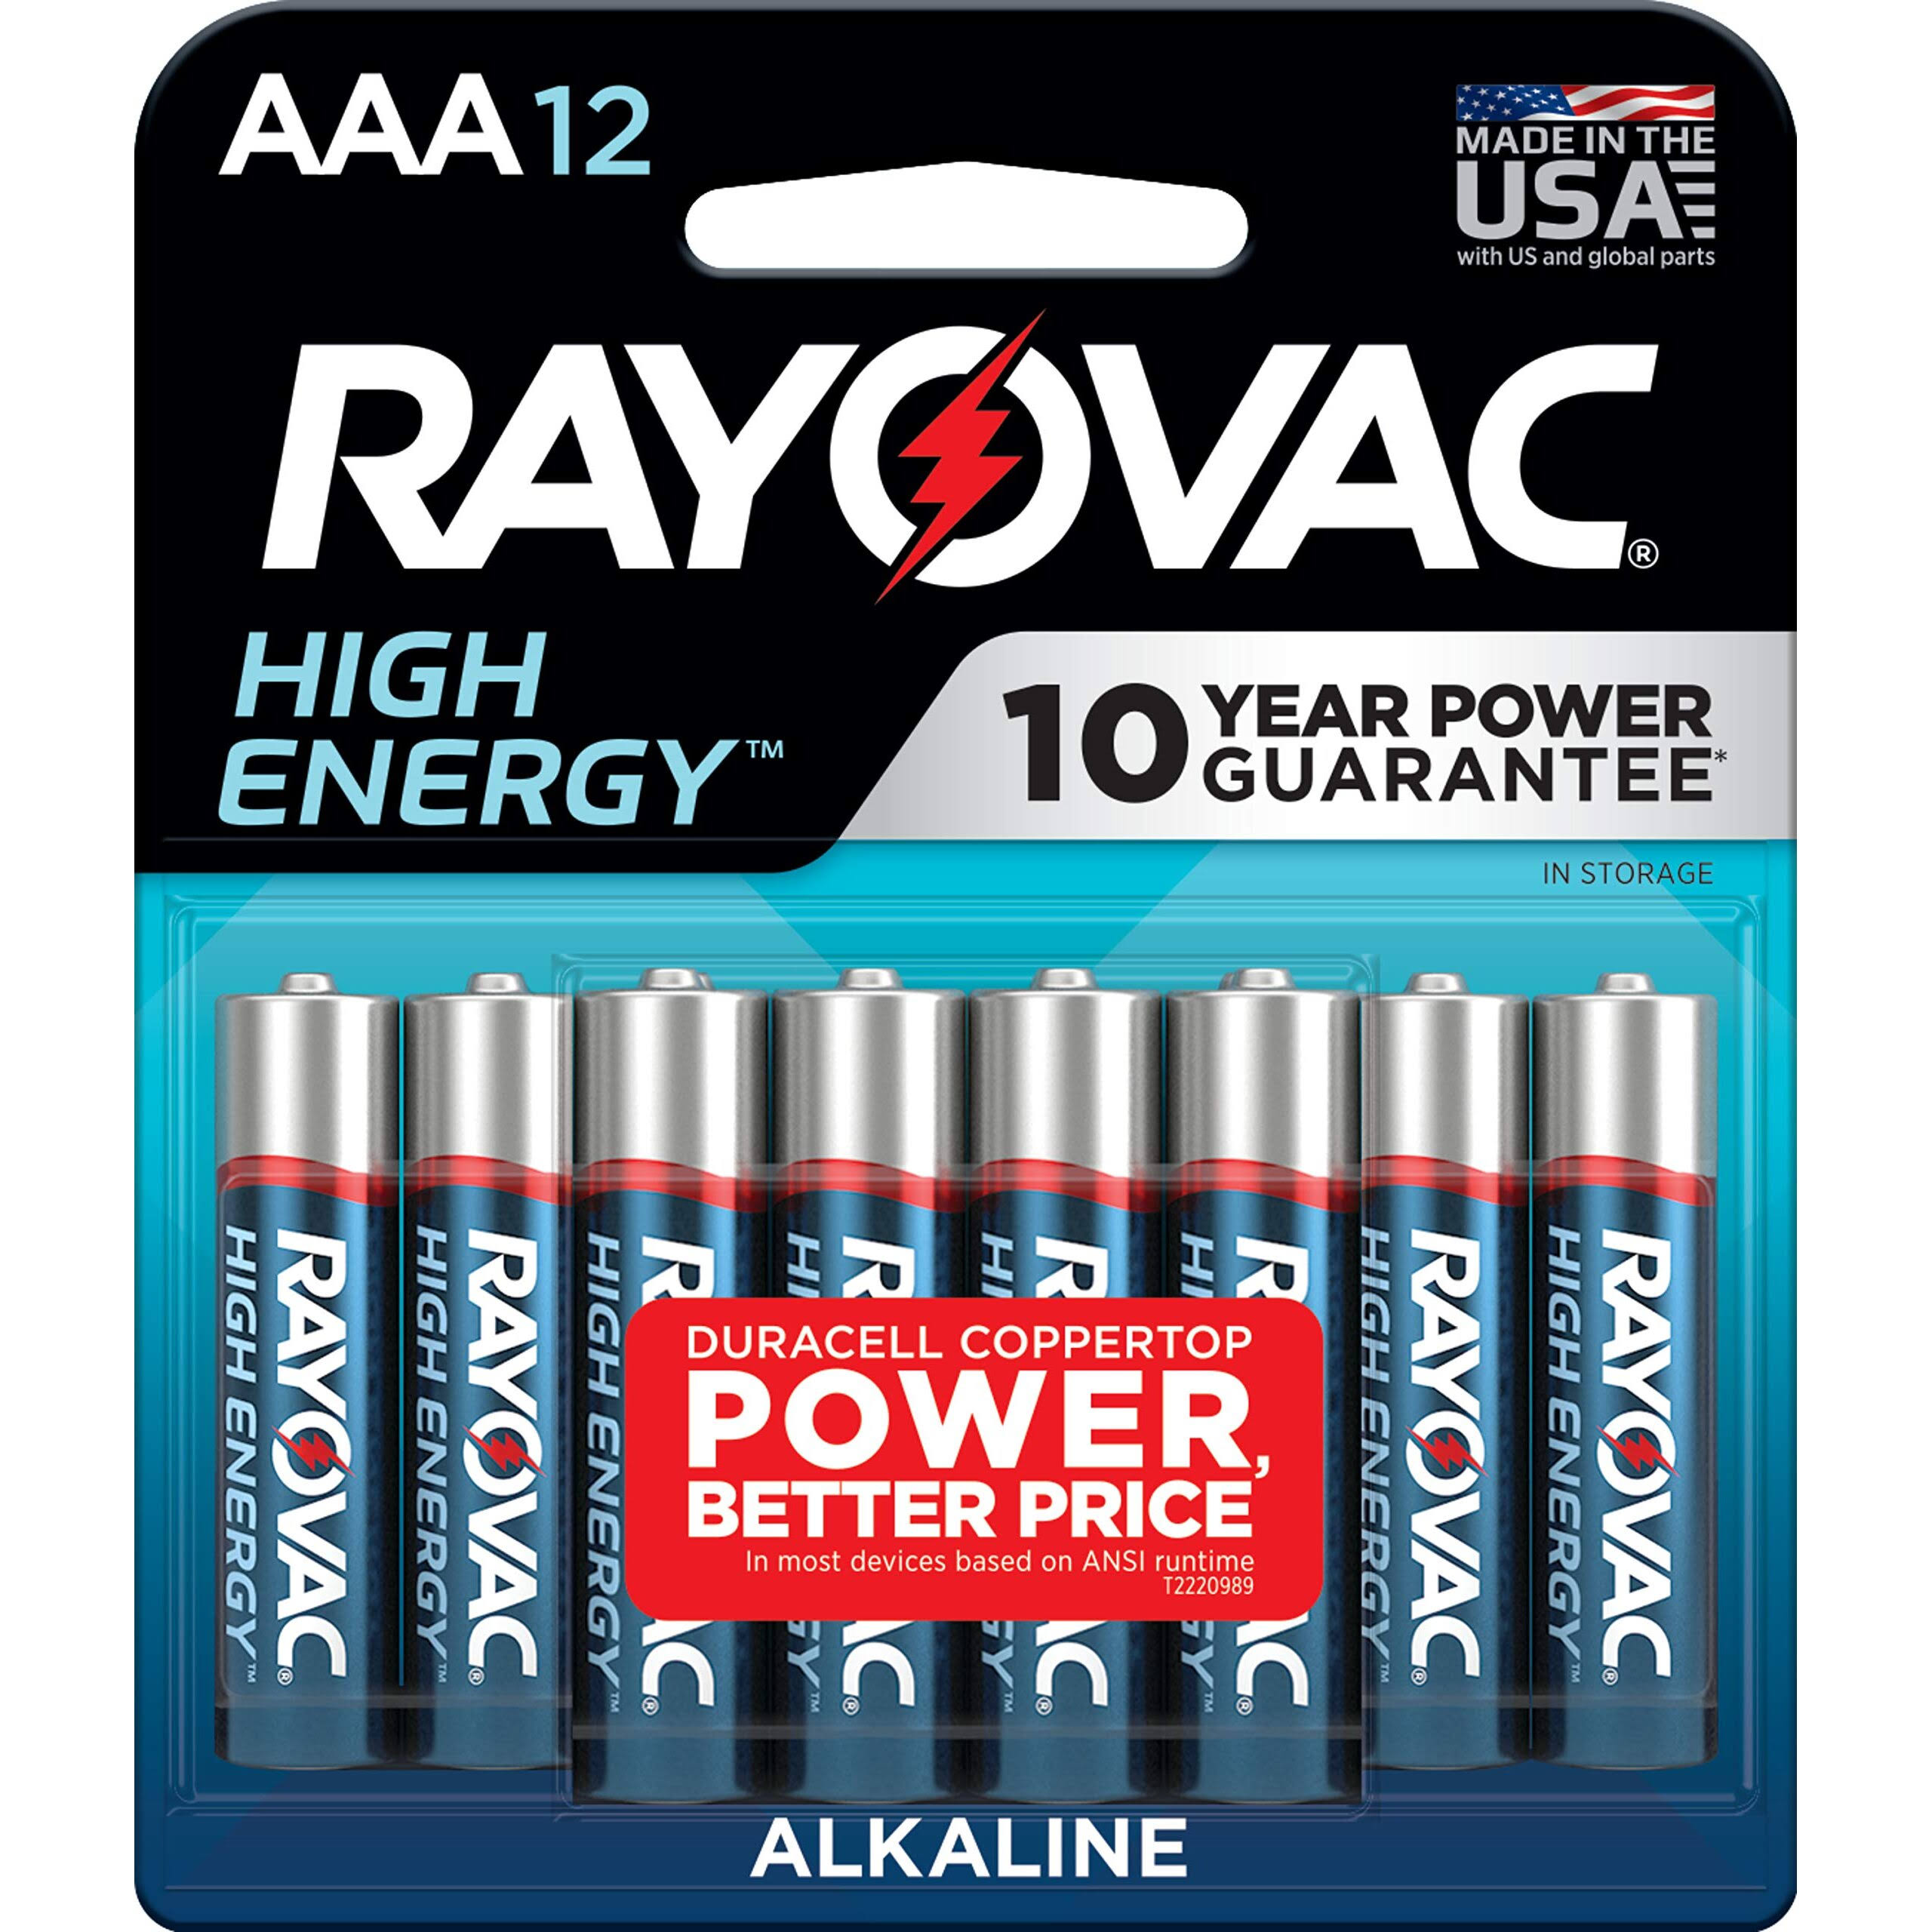 Rayovac Alkaline Batteries - AAA, 12pk